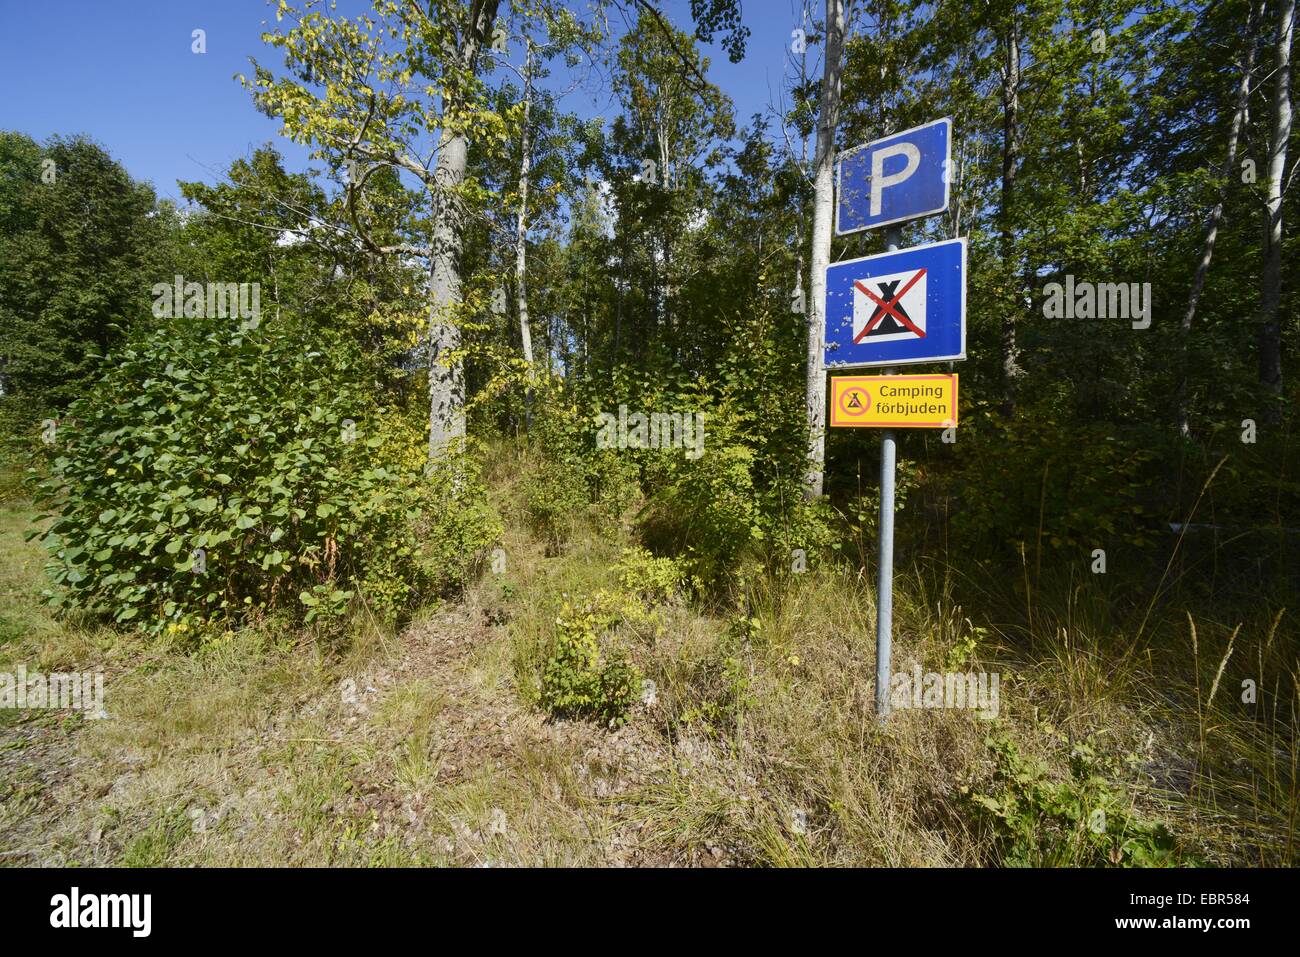 Camping sueco no permitió firmar en un lugar de aparcamiento, Suecia, Smaland Foto de stock